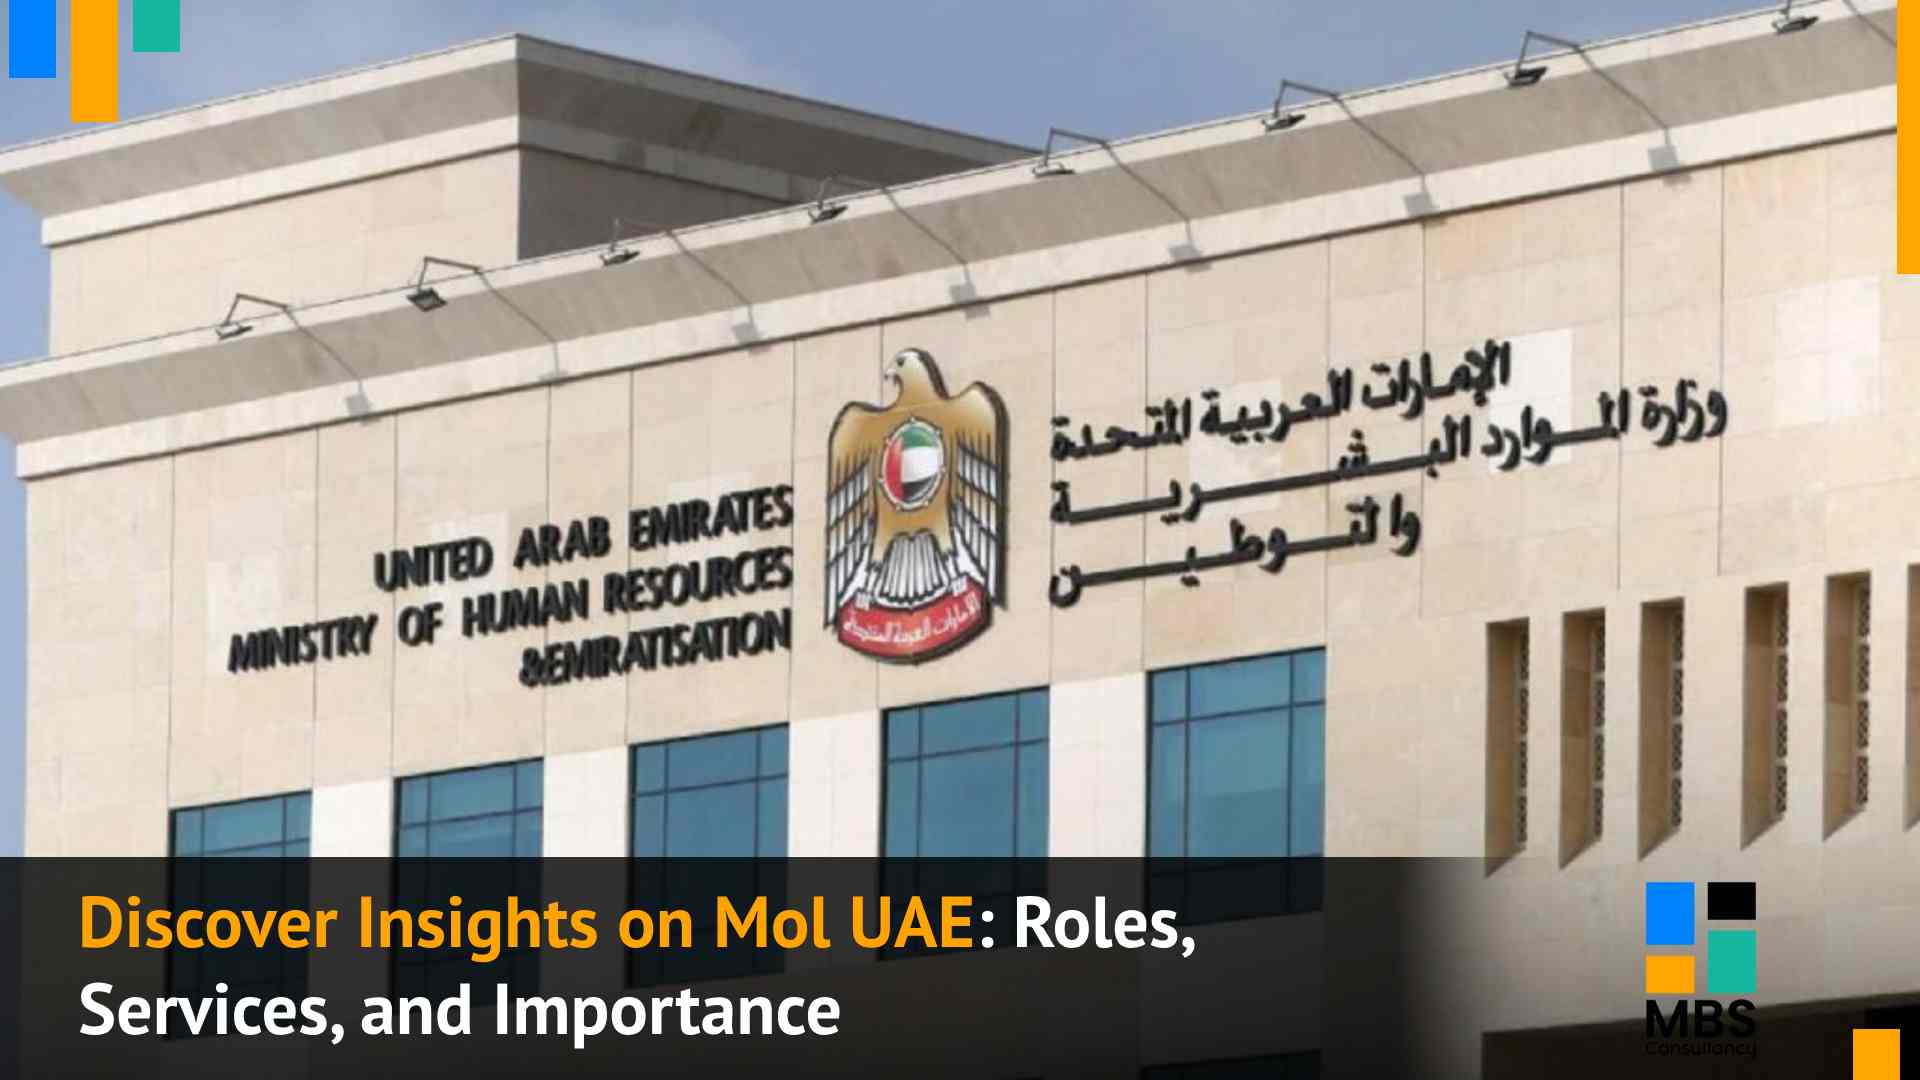 MOL UAE